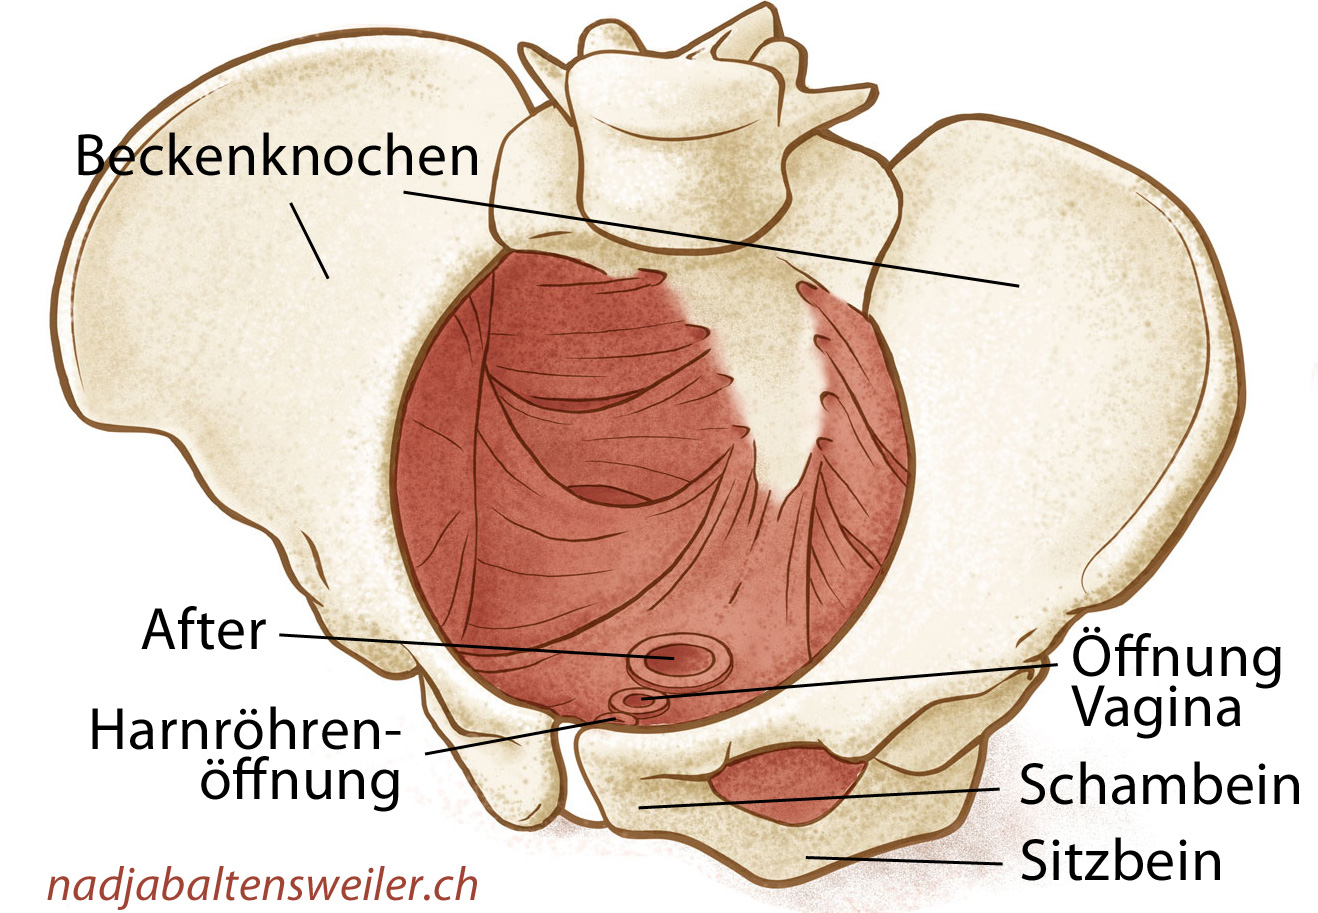 Dargestellt sind die Beckenknochen, die Beckenbodenmuskeln, der After, die Öffnung der Vagina und die Harnröhrenöffnung.